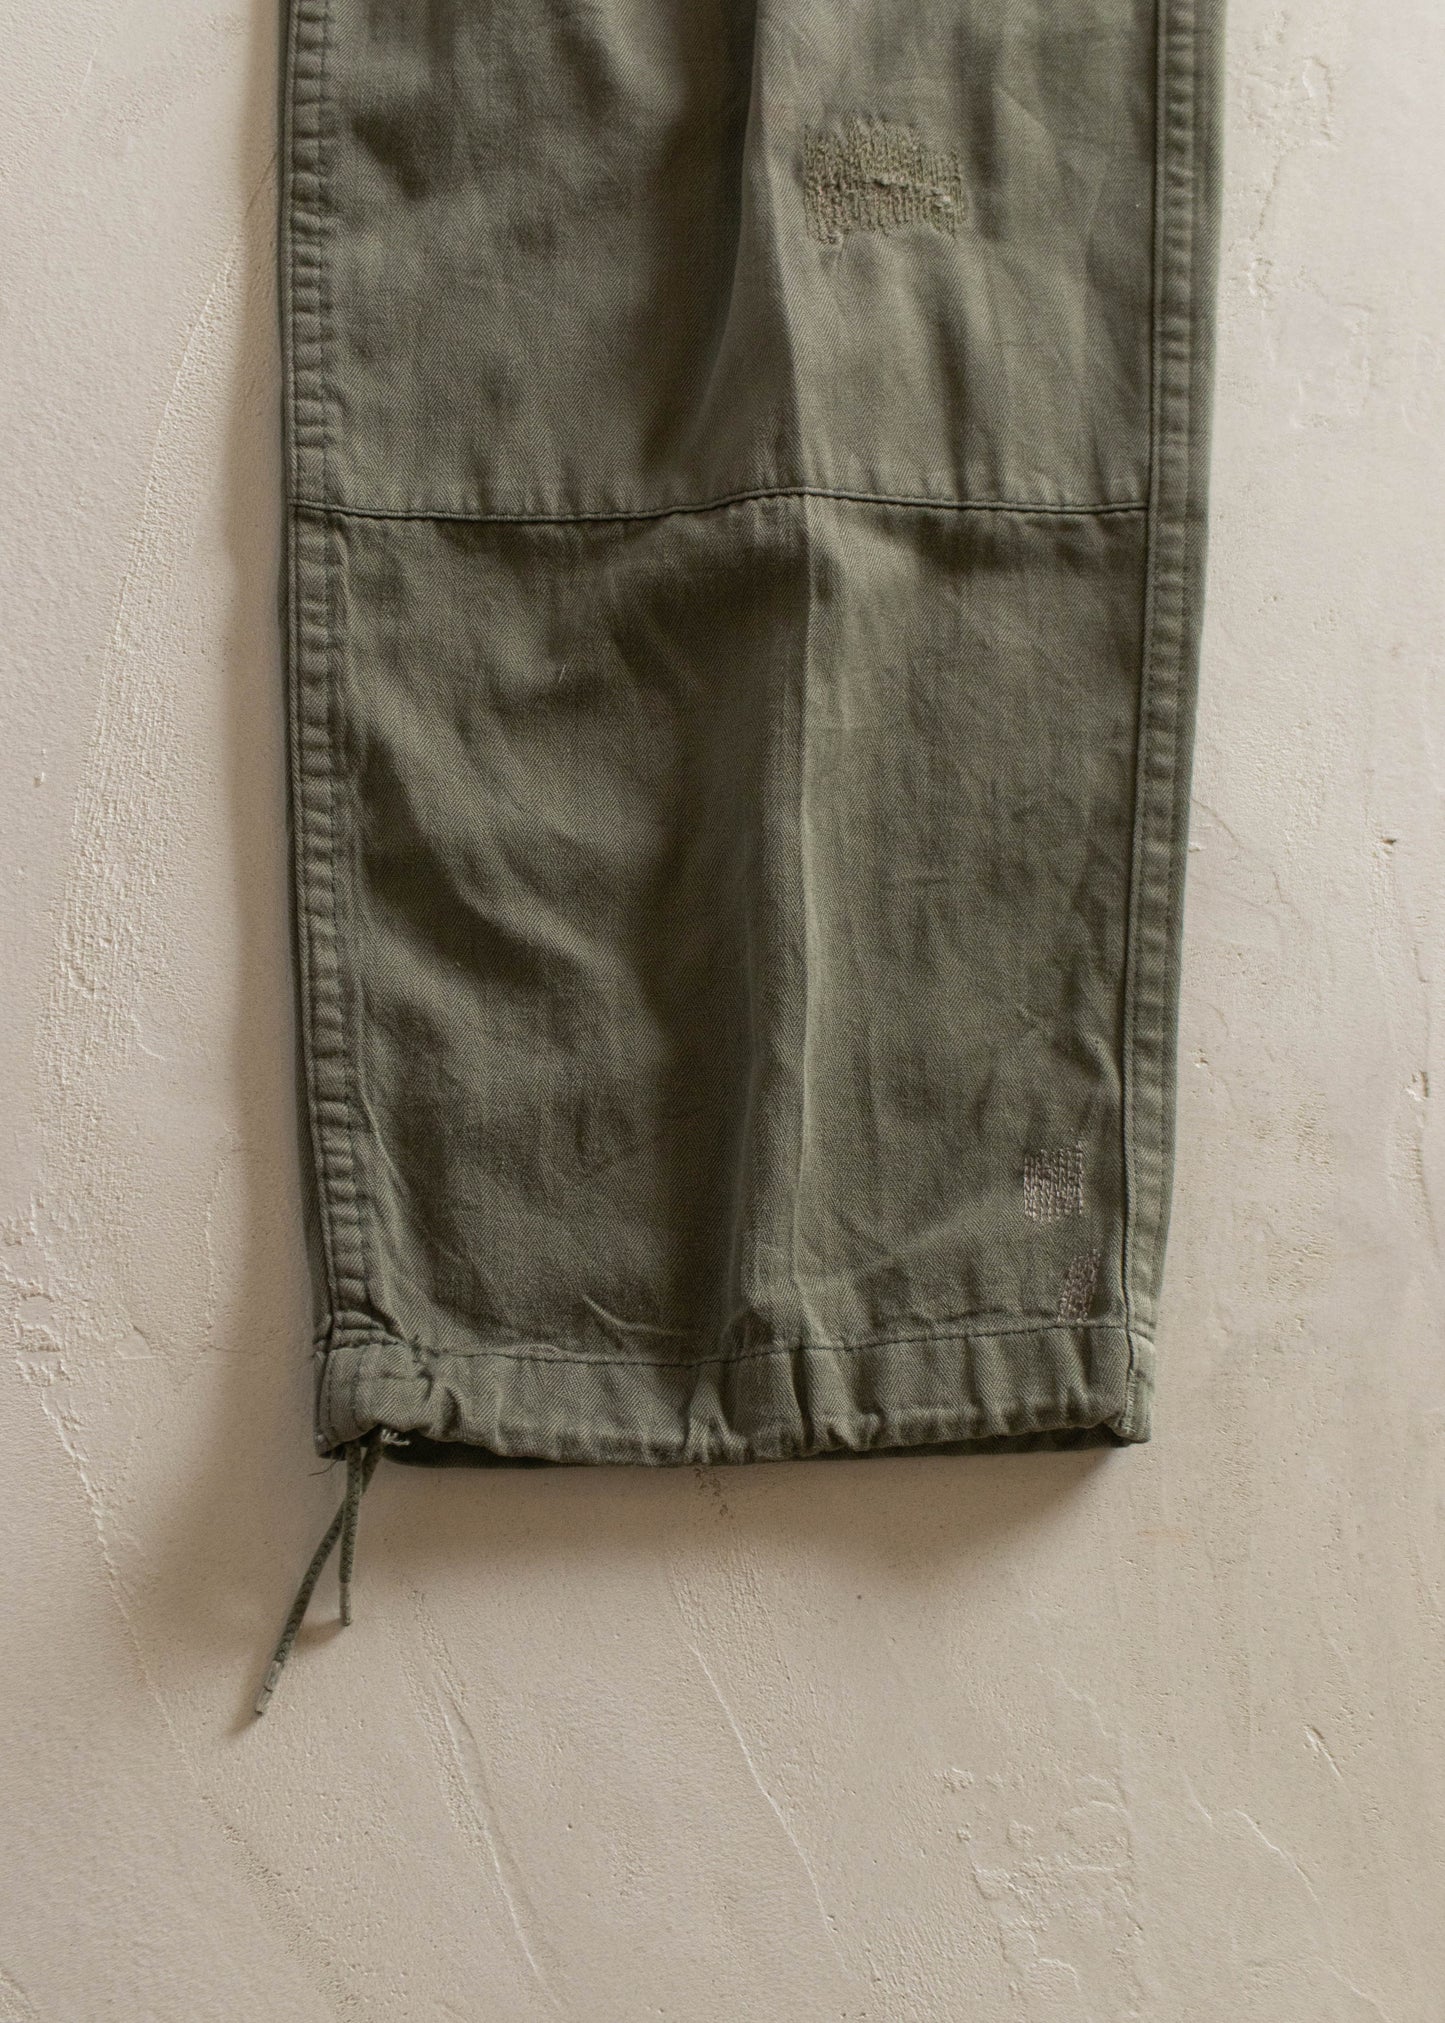 1982 Paul Royé HBT French Military Cargo Pants Size Women's 27 Men's 30